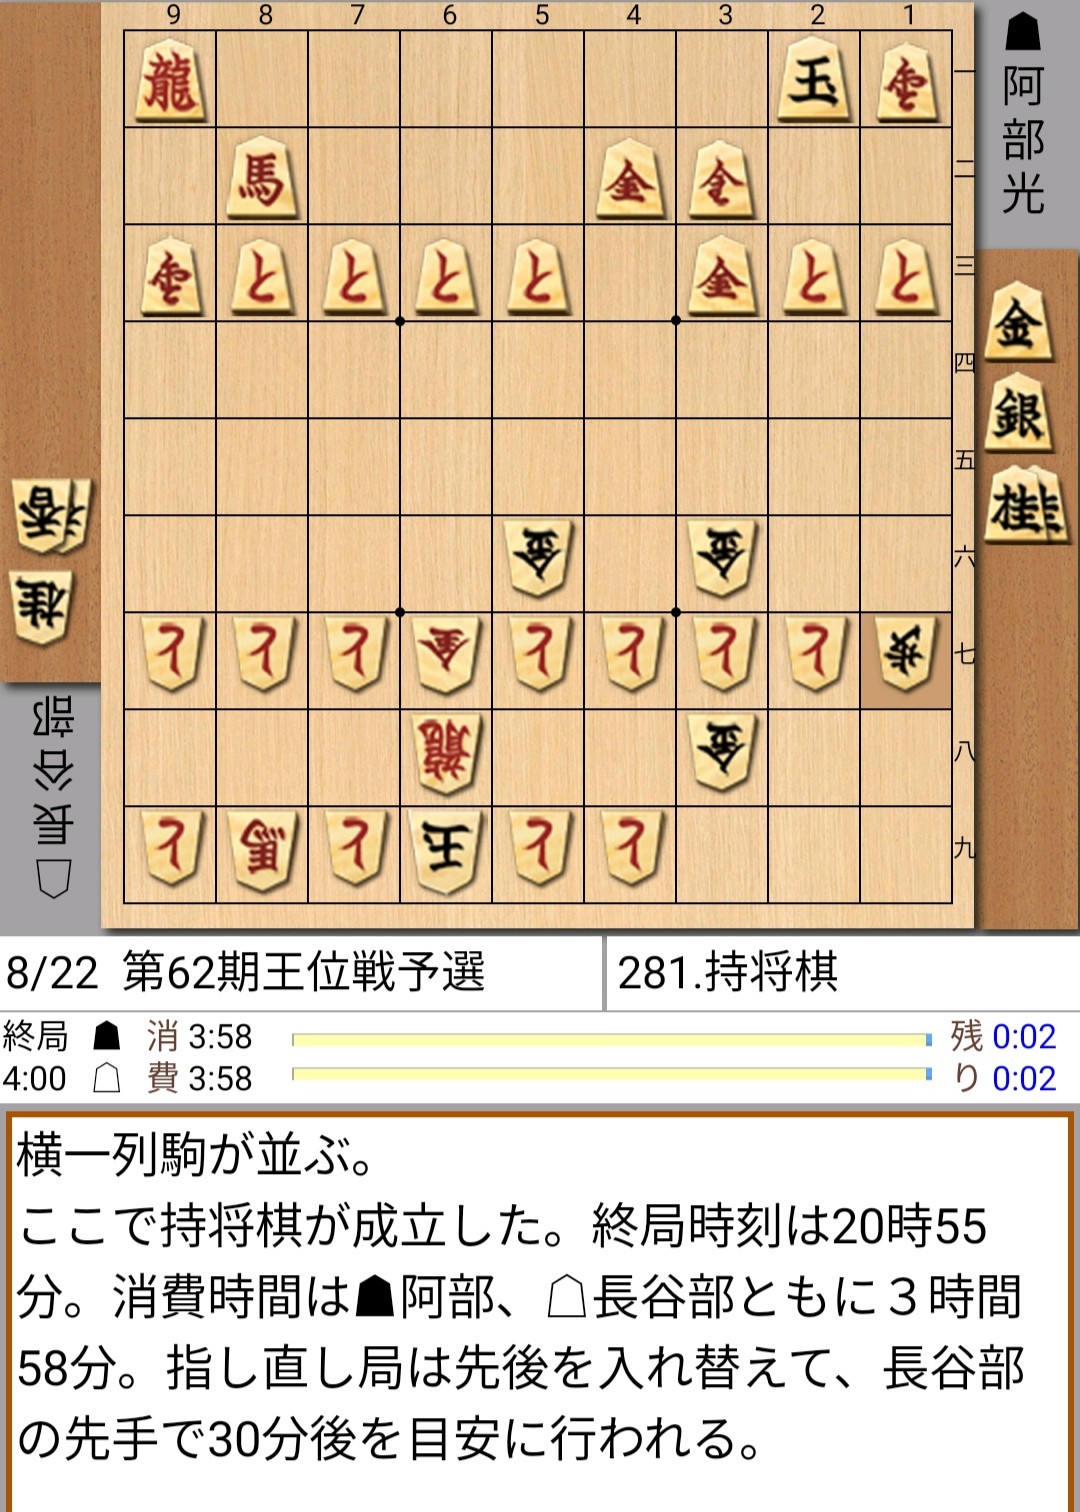 悲報 将棋のプロ棋士 公式戦ではっちゃける なんjコレクション